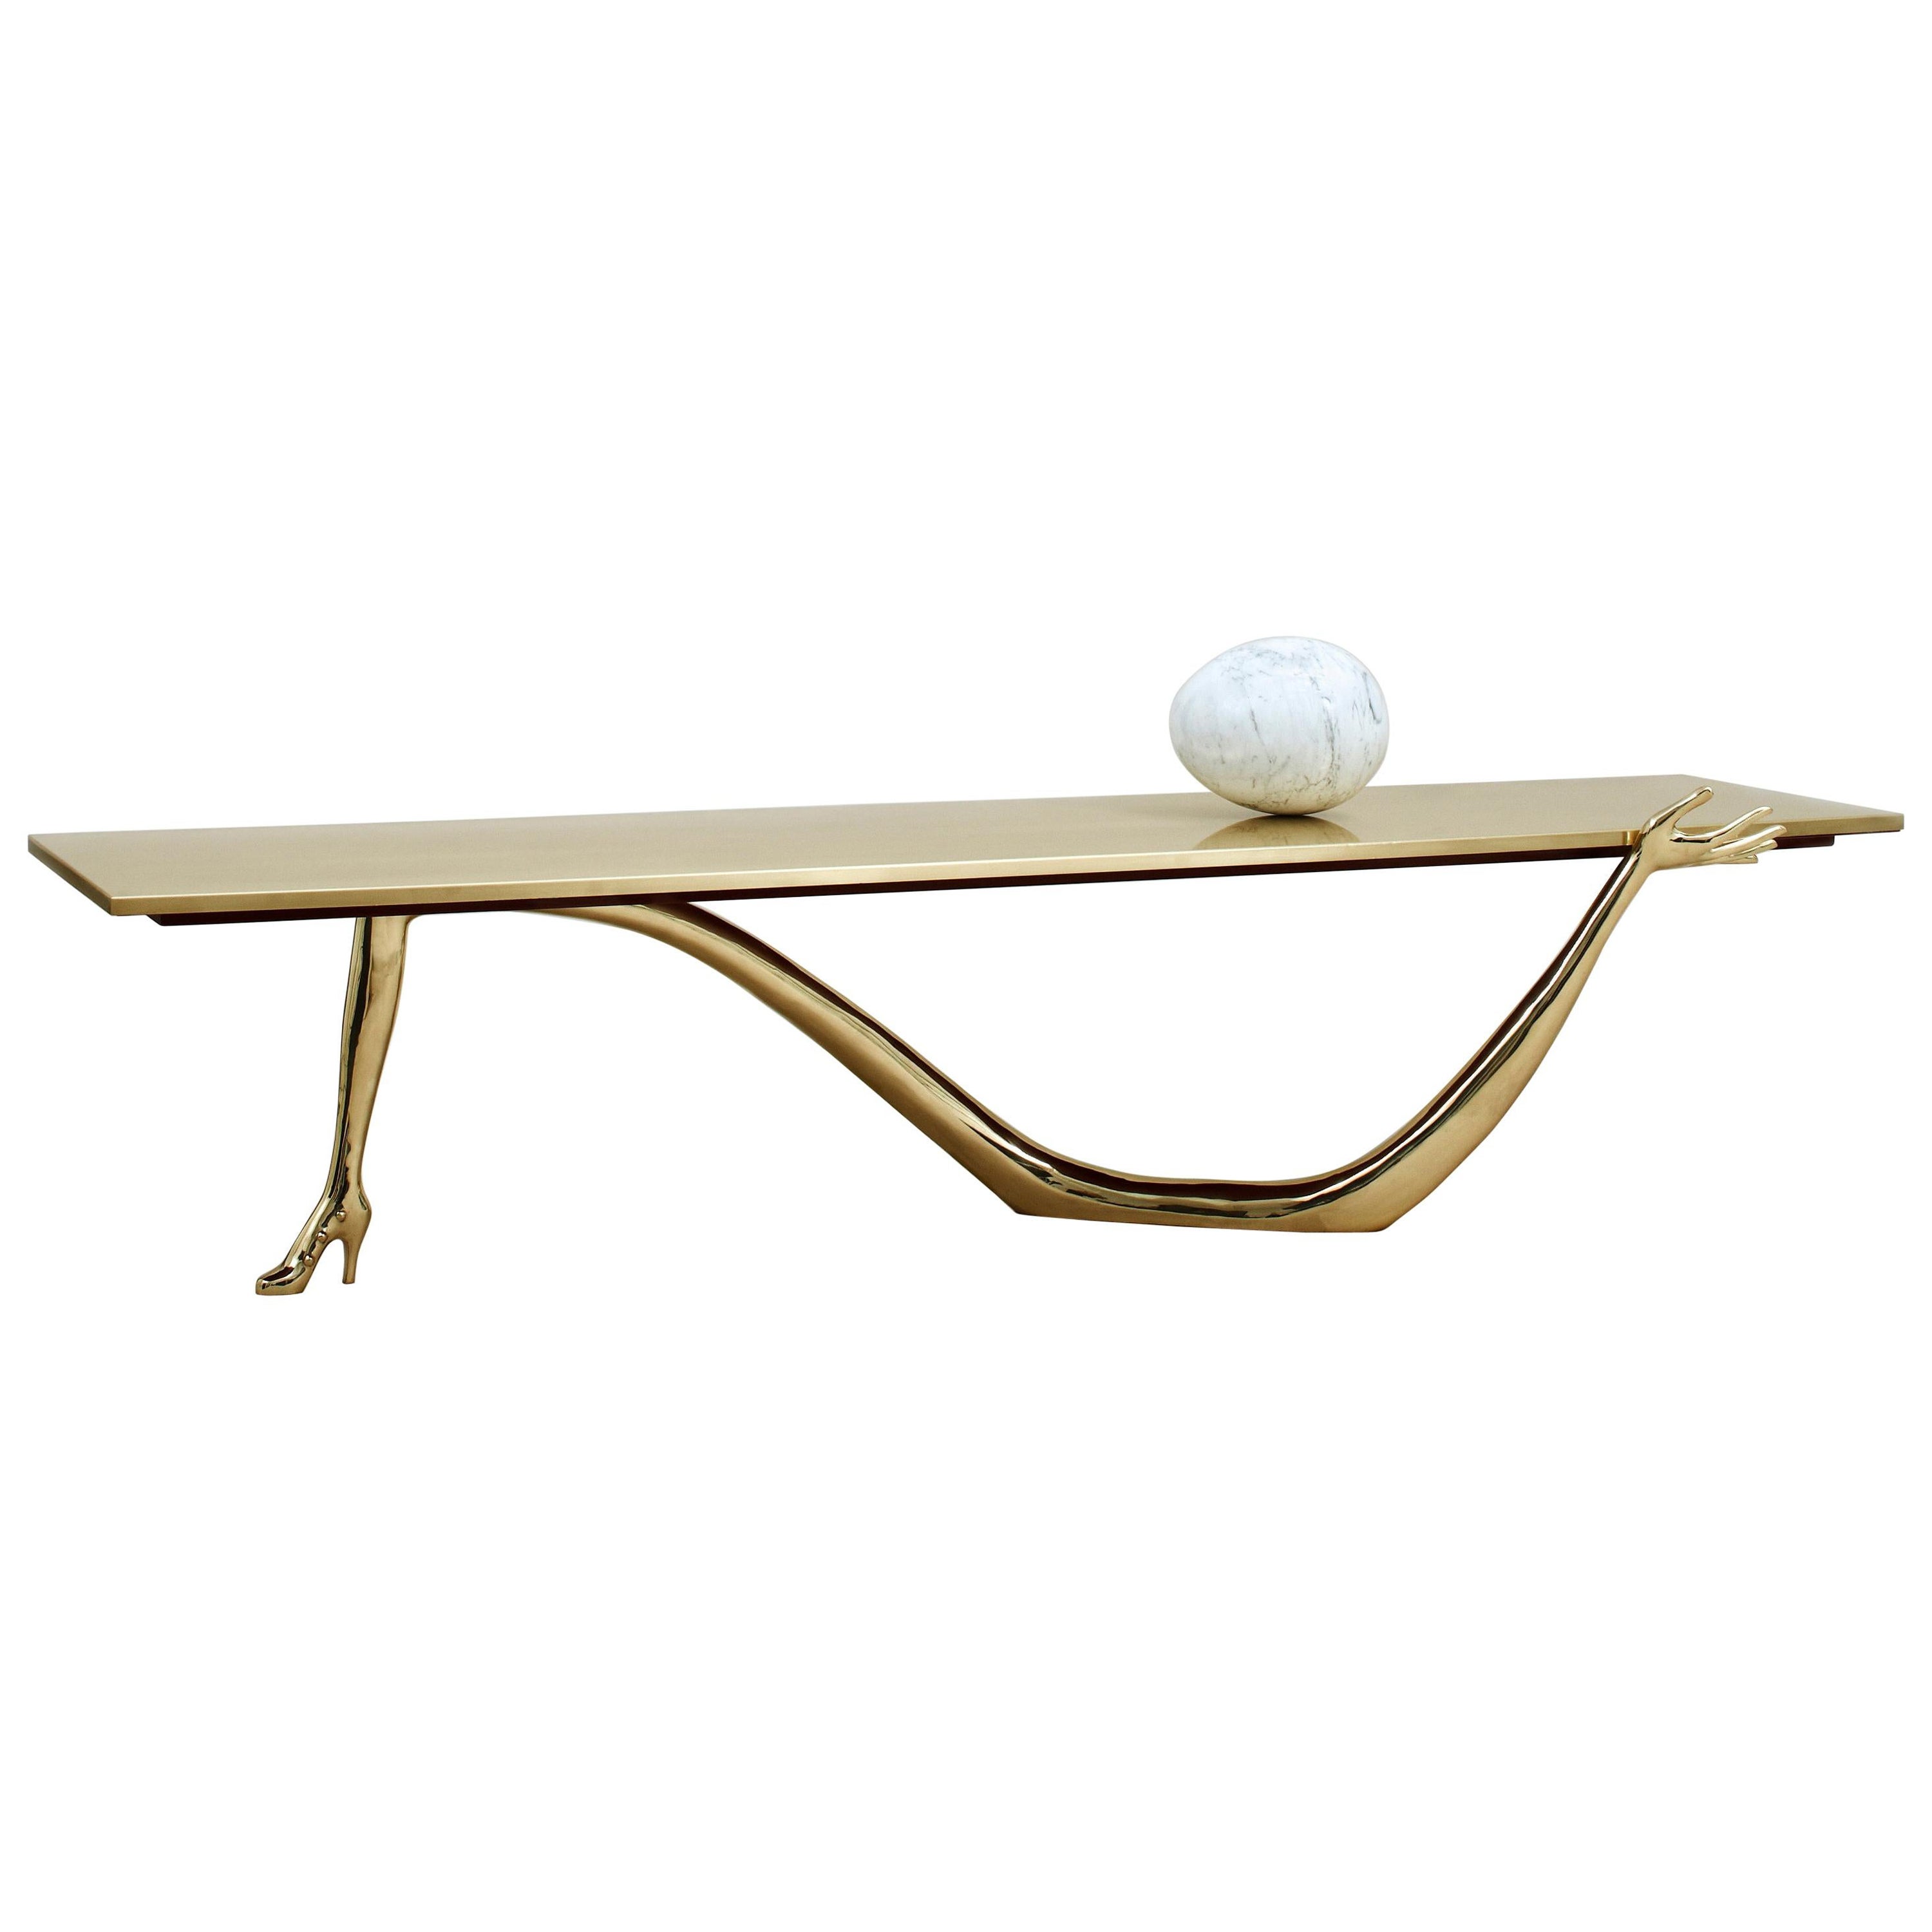 Table basse en laiton modèle "Leda" de Salvador Dalí Design espagnol du 20e siècle